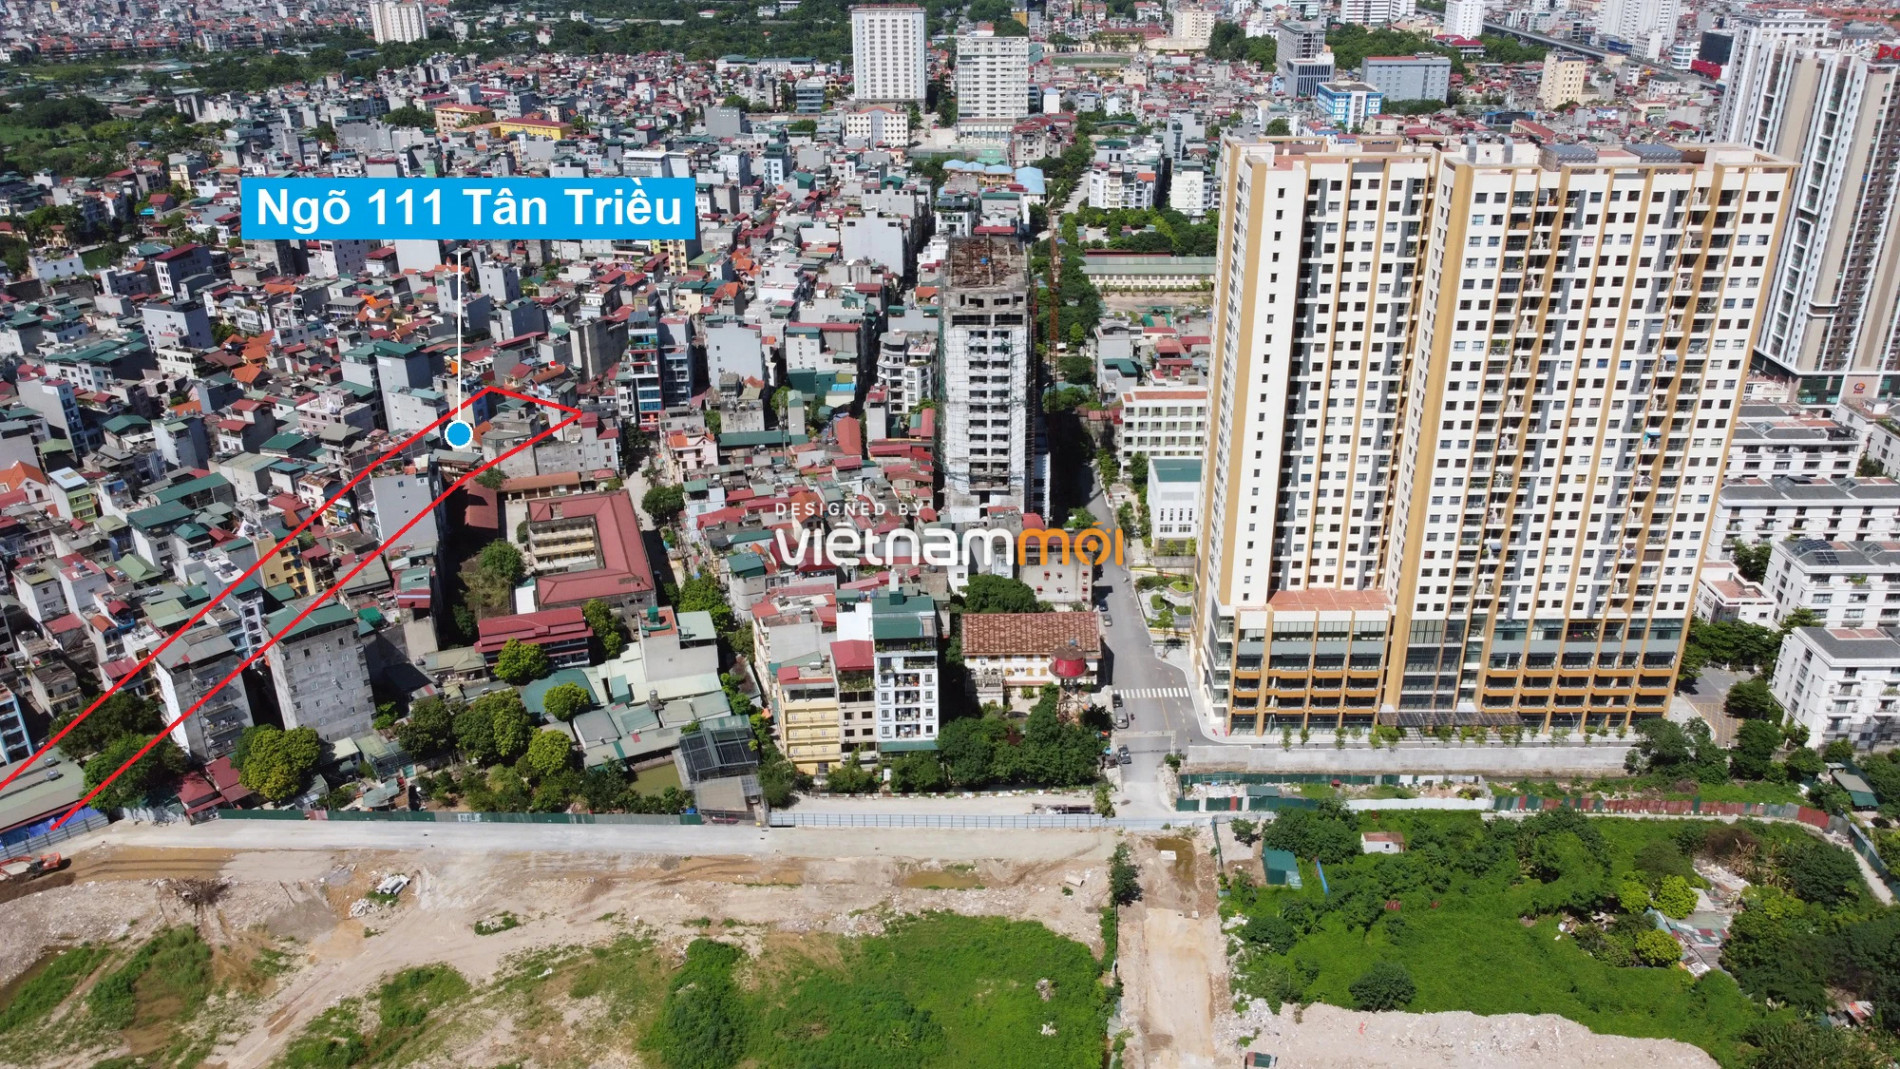 Những khu đất sắp thu hồi để mở đường ở xã Tân Triều, Thanh Trì, Hà Nội (phần 11) - Ảnh 16.